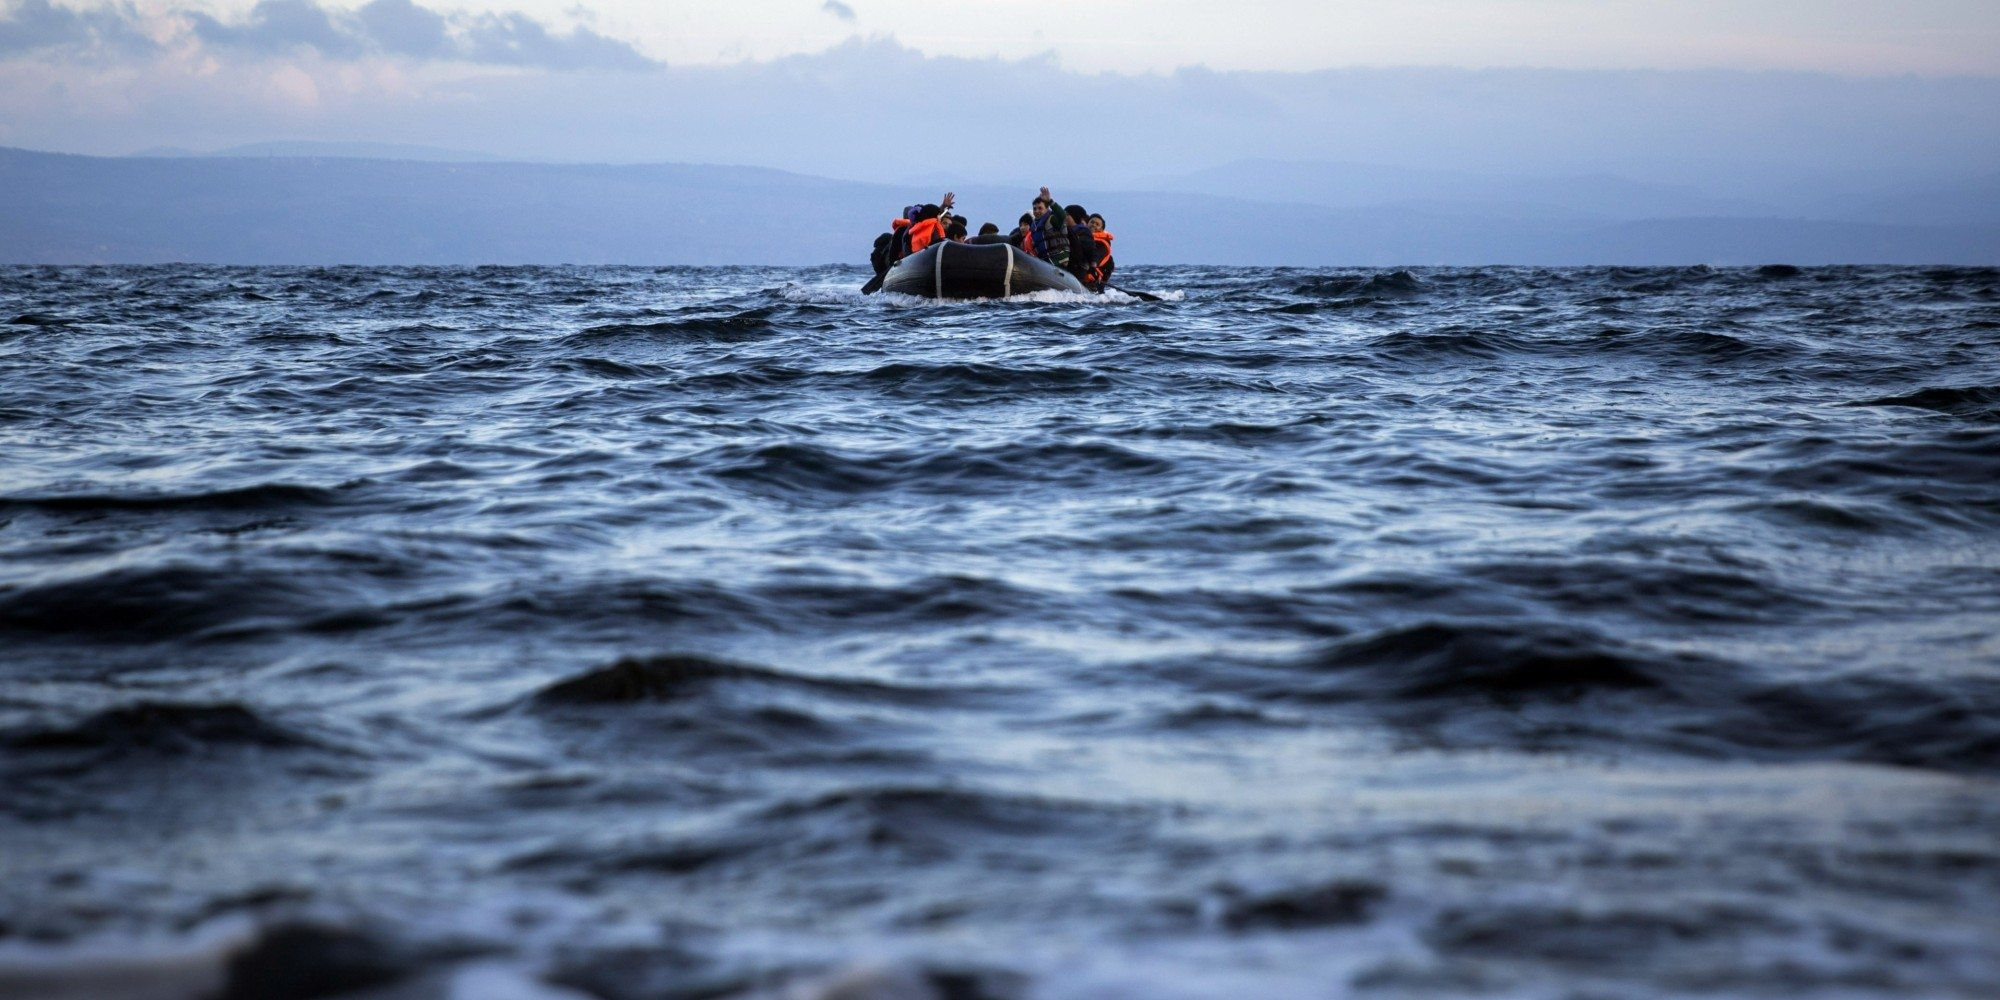 Nέο, πολύνεκρο ναυάγιο με πρόσφυγες ανοικτά της Λιβύης